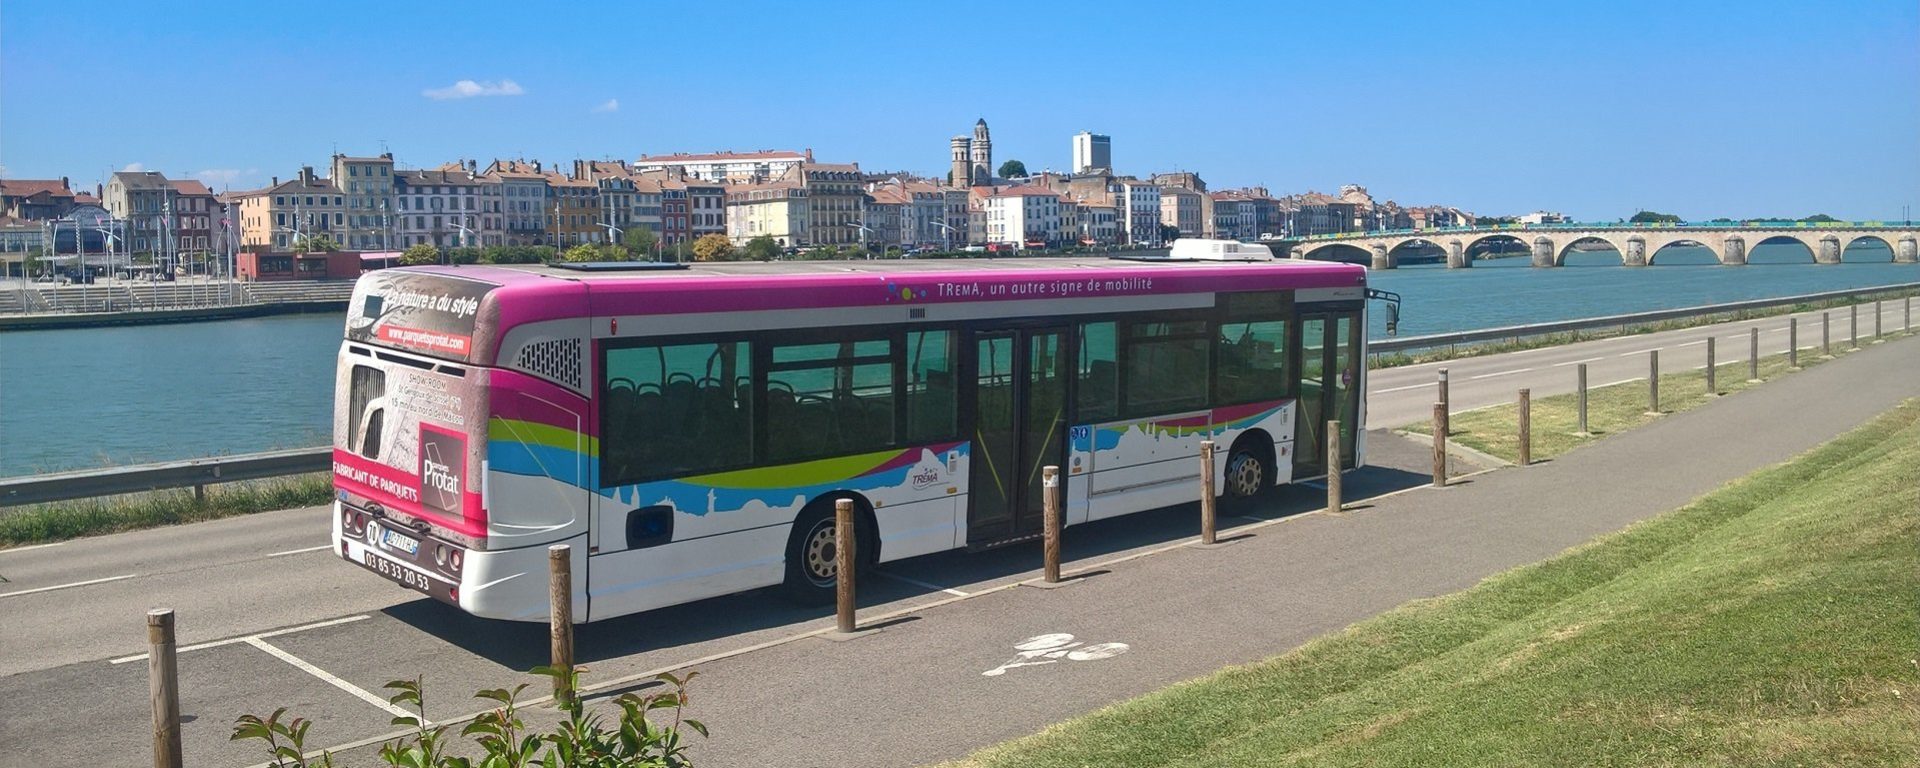 Bus réseau transport urbain Tréma ville Mâcon Transdev